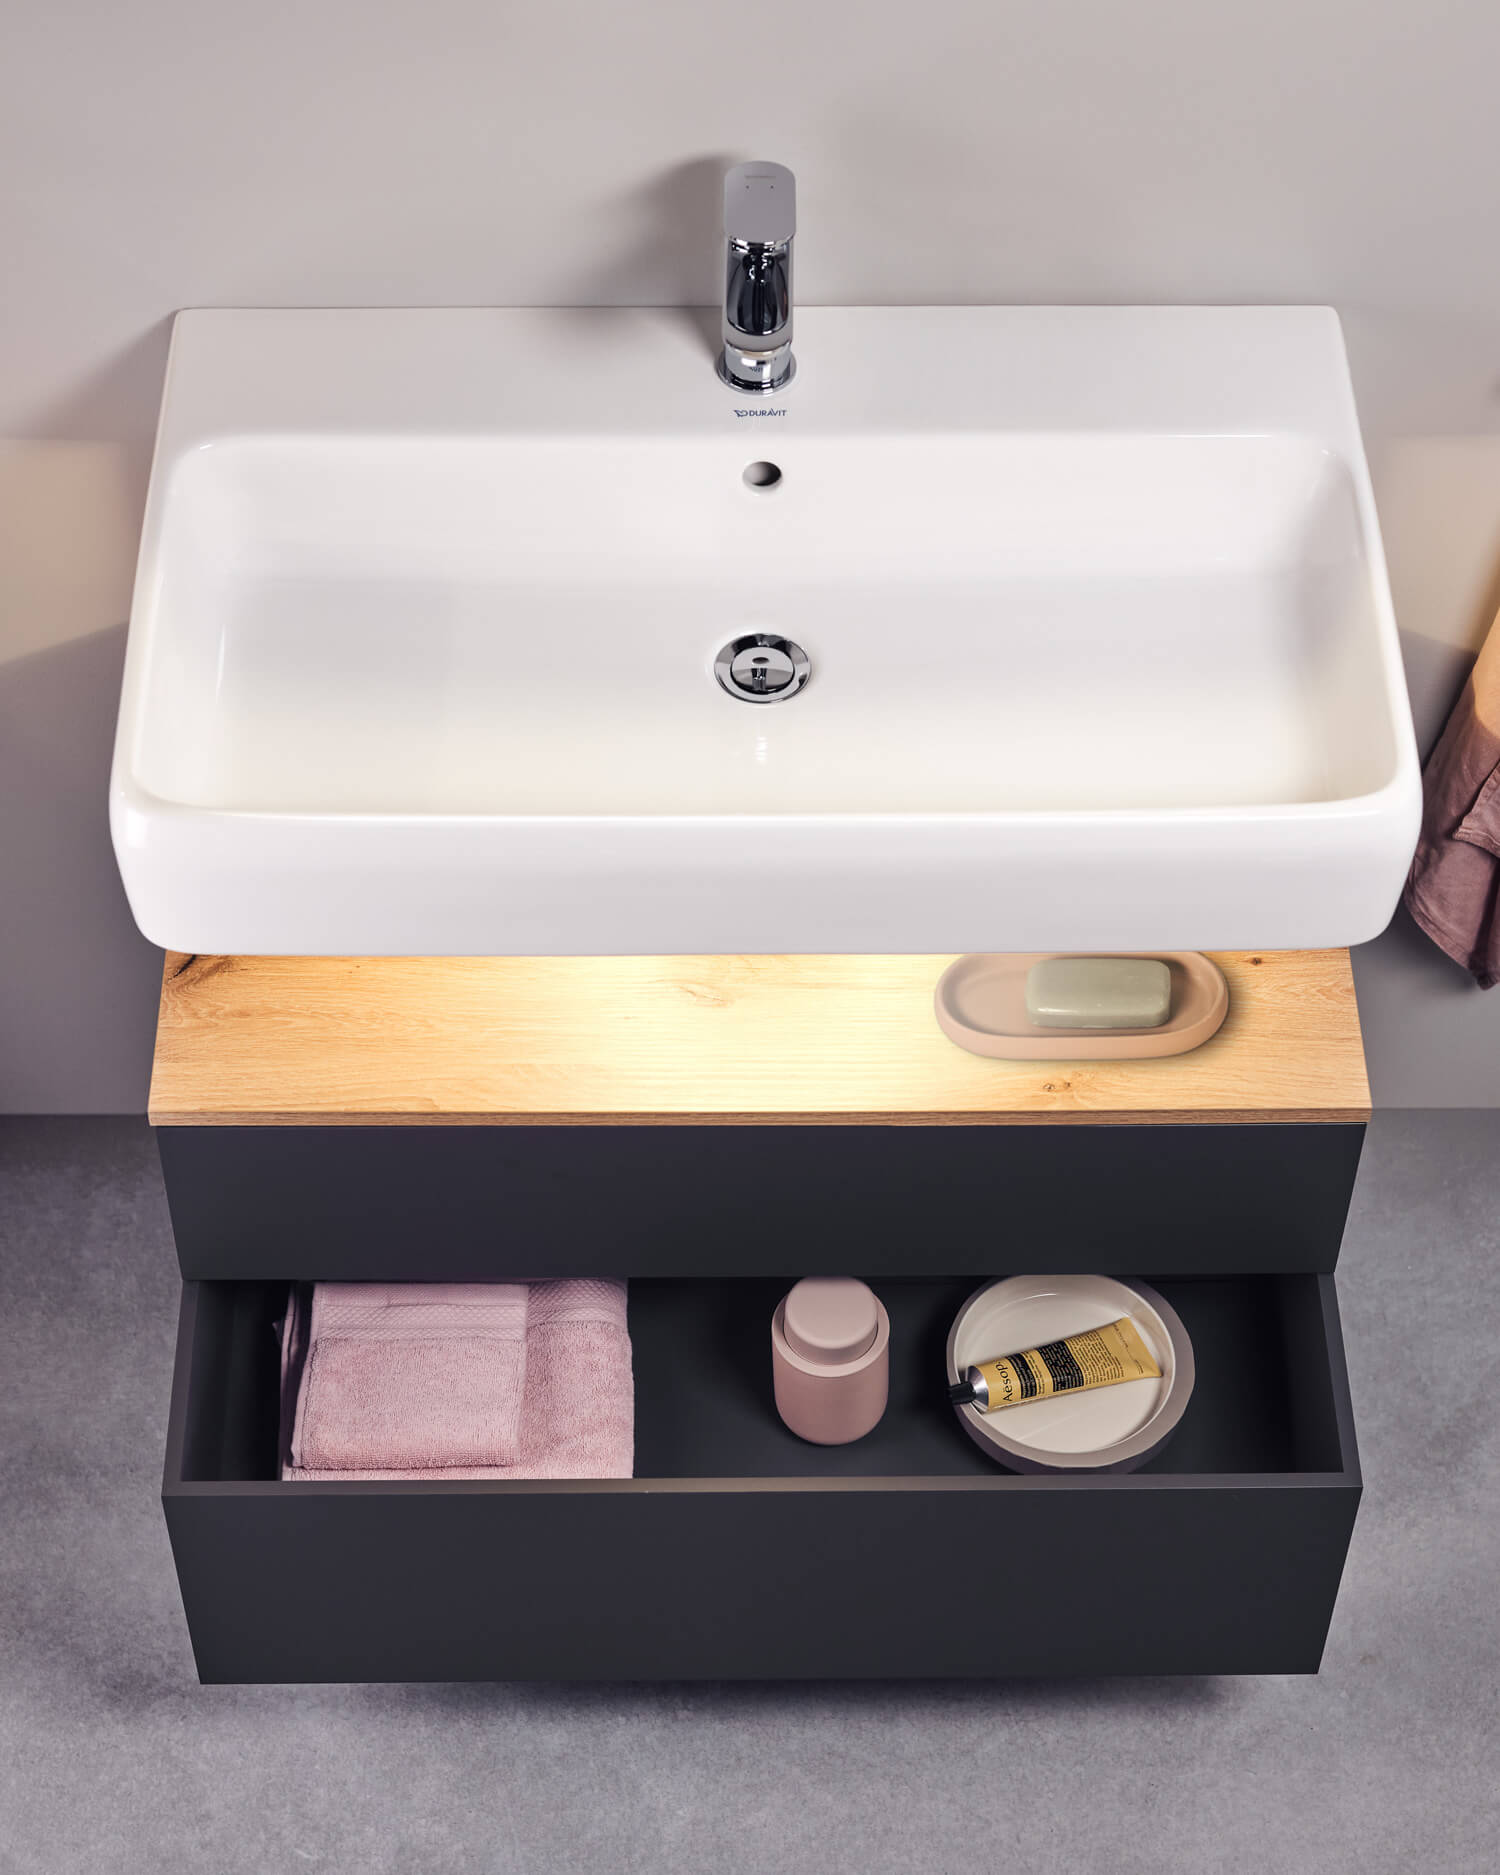 Wall mounted washbasin with washbasin vanity unit
